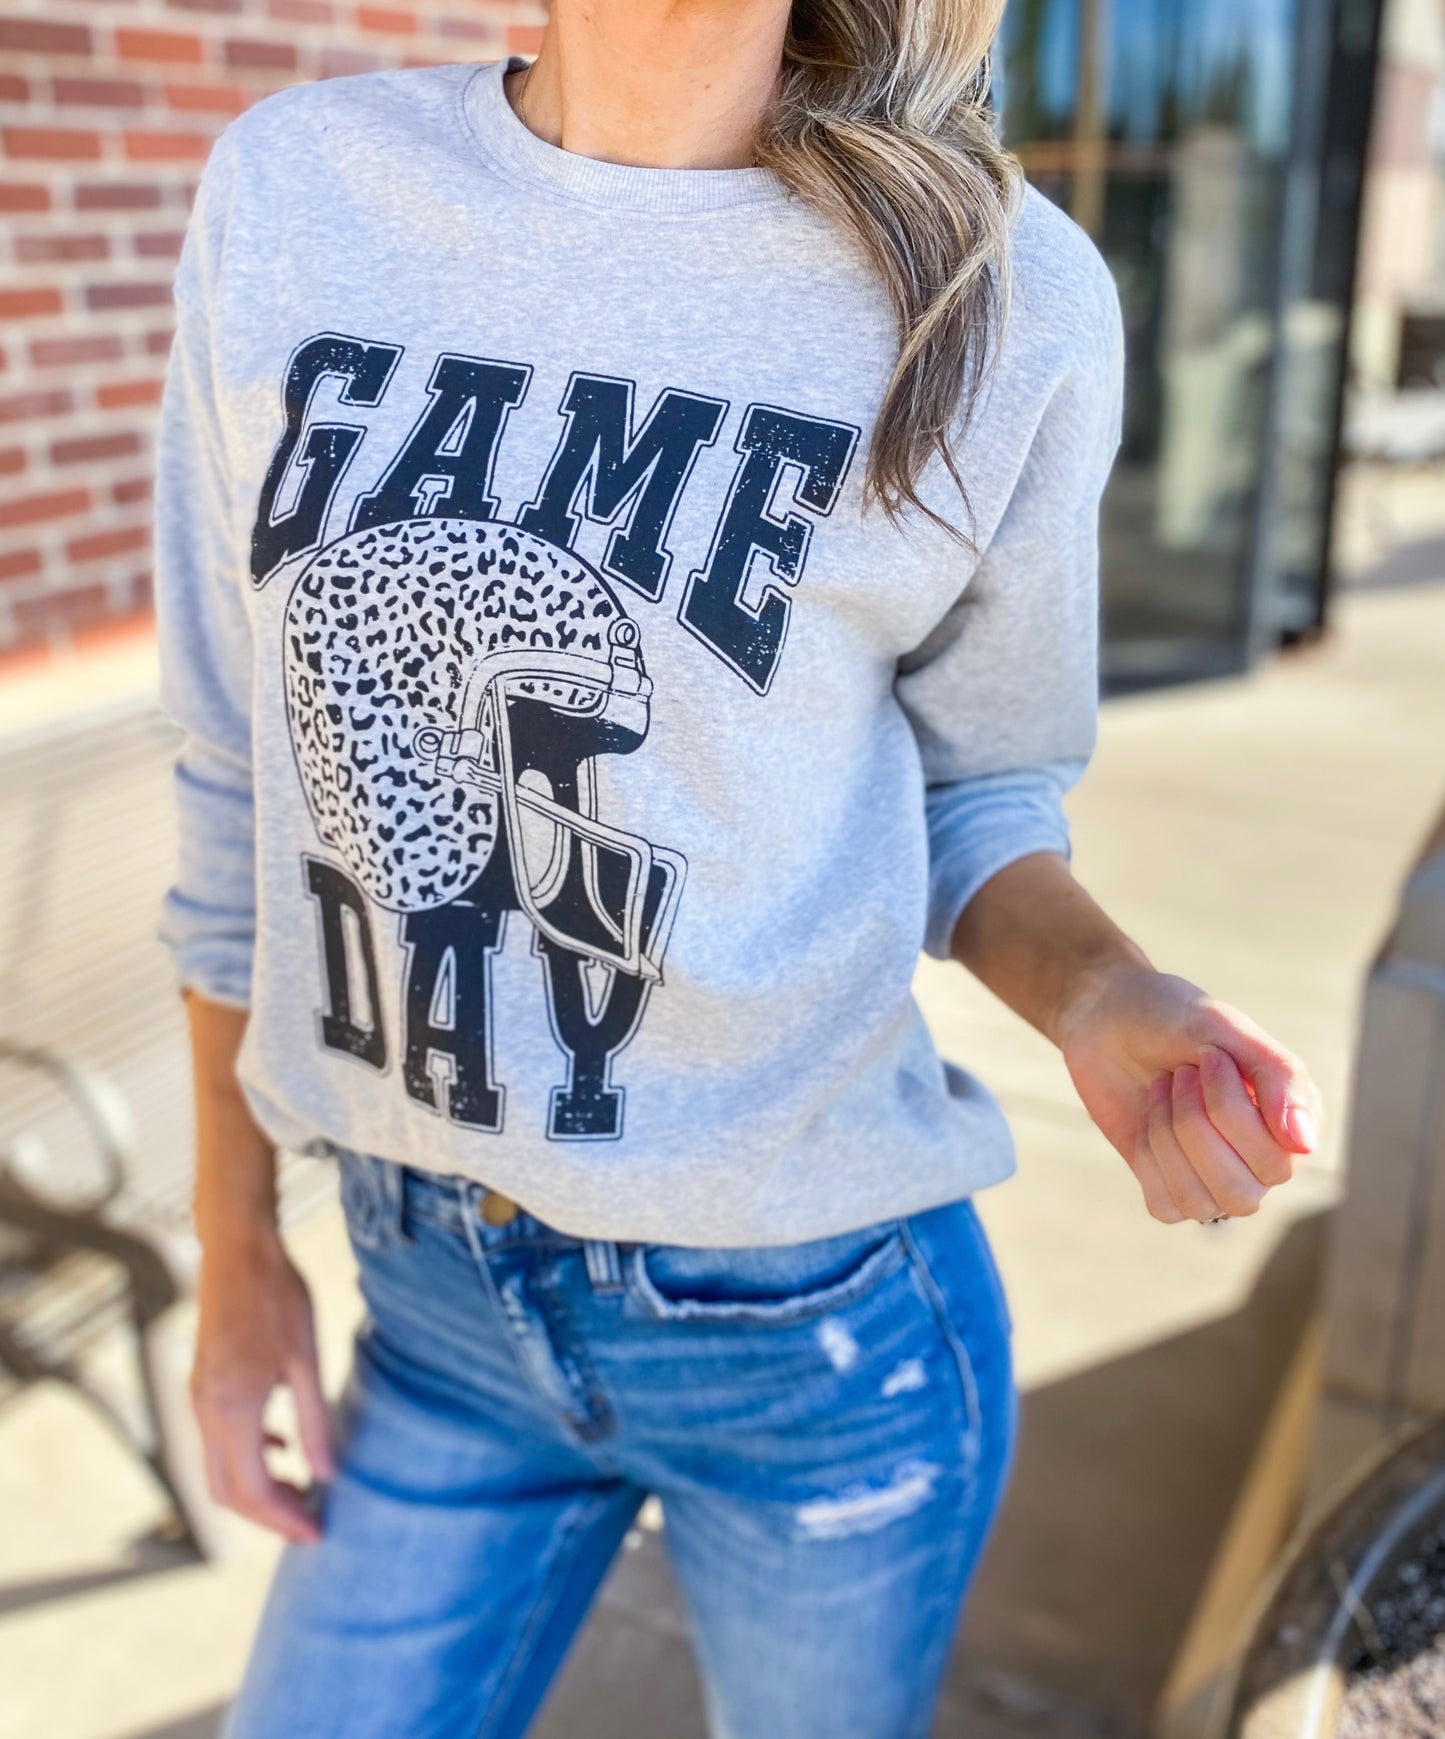 Game Day Leopard Sweatshirt